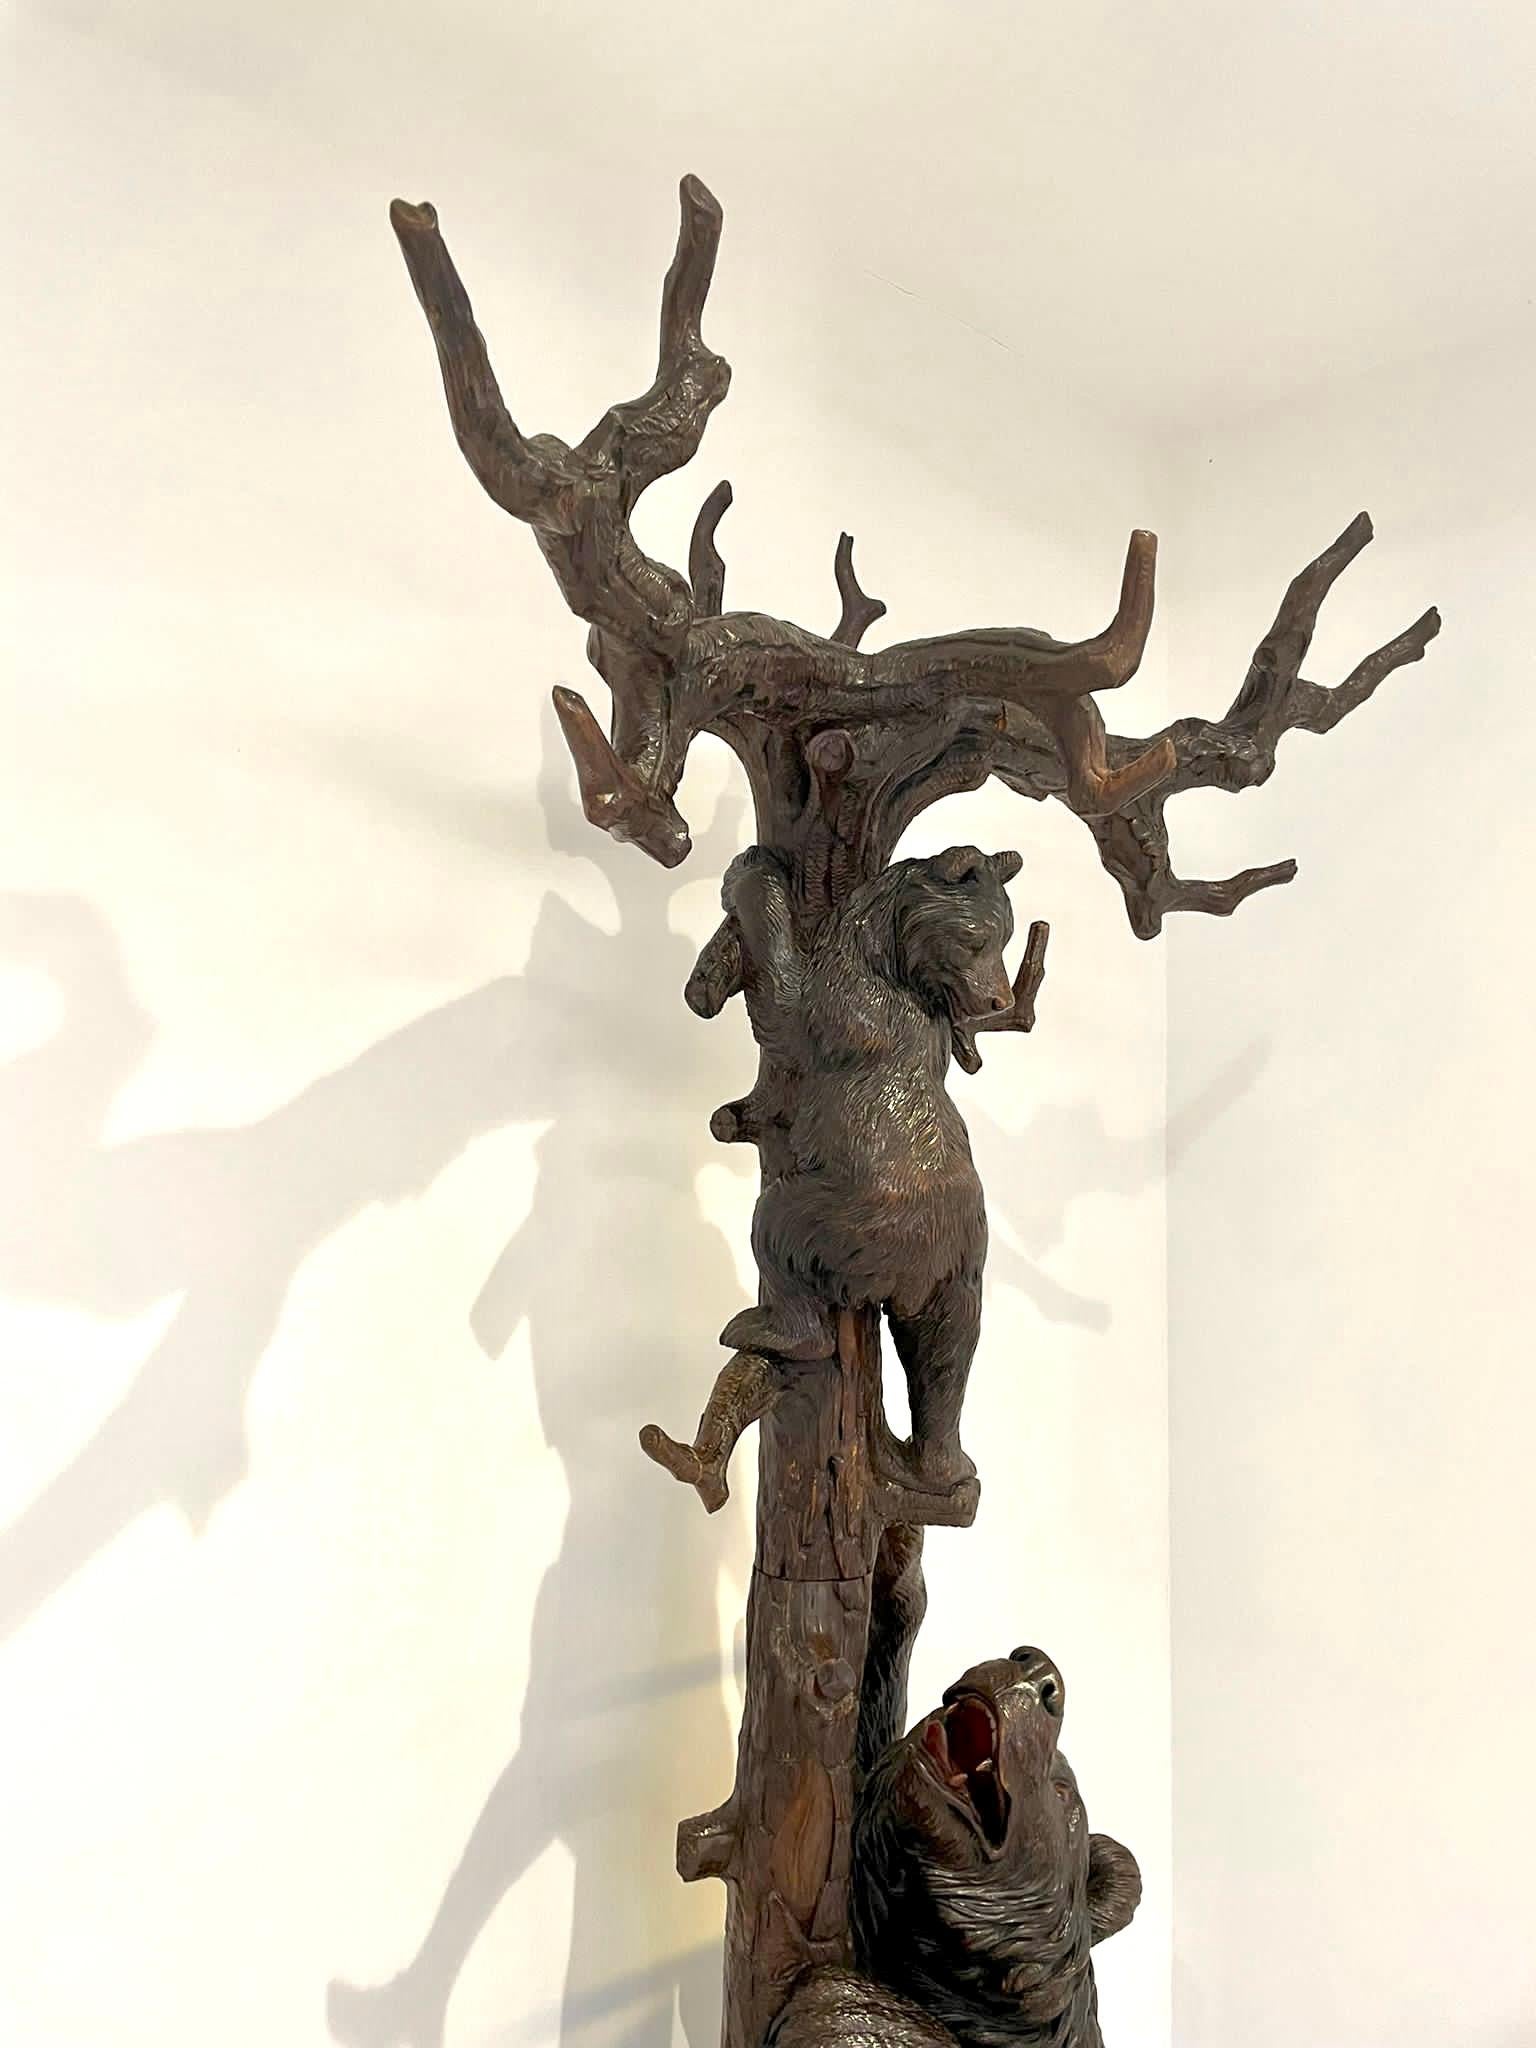 Ce magnifique stand d'exposition antique pour arbre à ours de la Forêt-Noire présente deux ours sculptés de qualité spectaculaire : la mère ours encourage son petit à grimper dans l'arbre, les branches formant des portemanteaux et la mère ours se